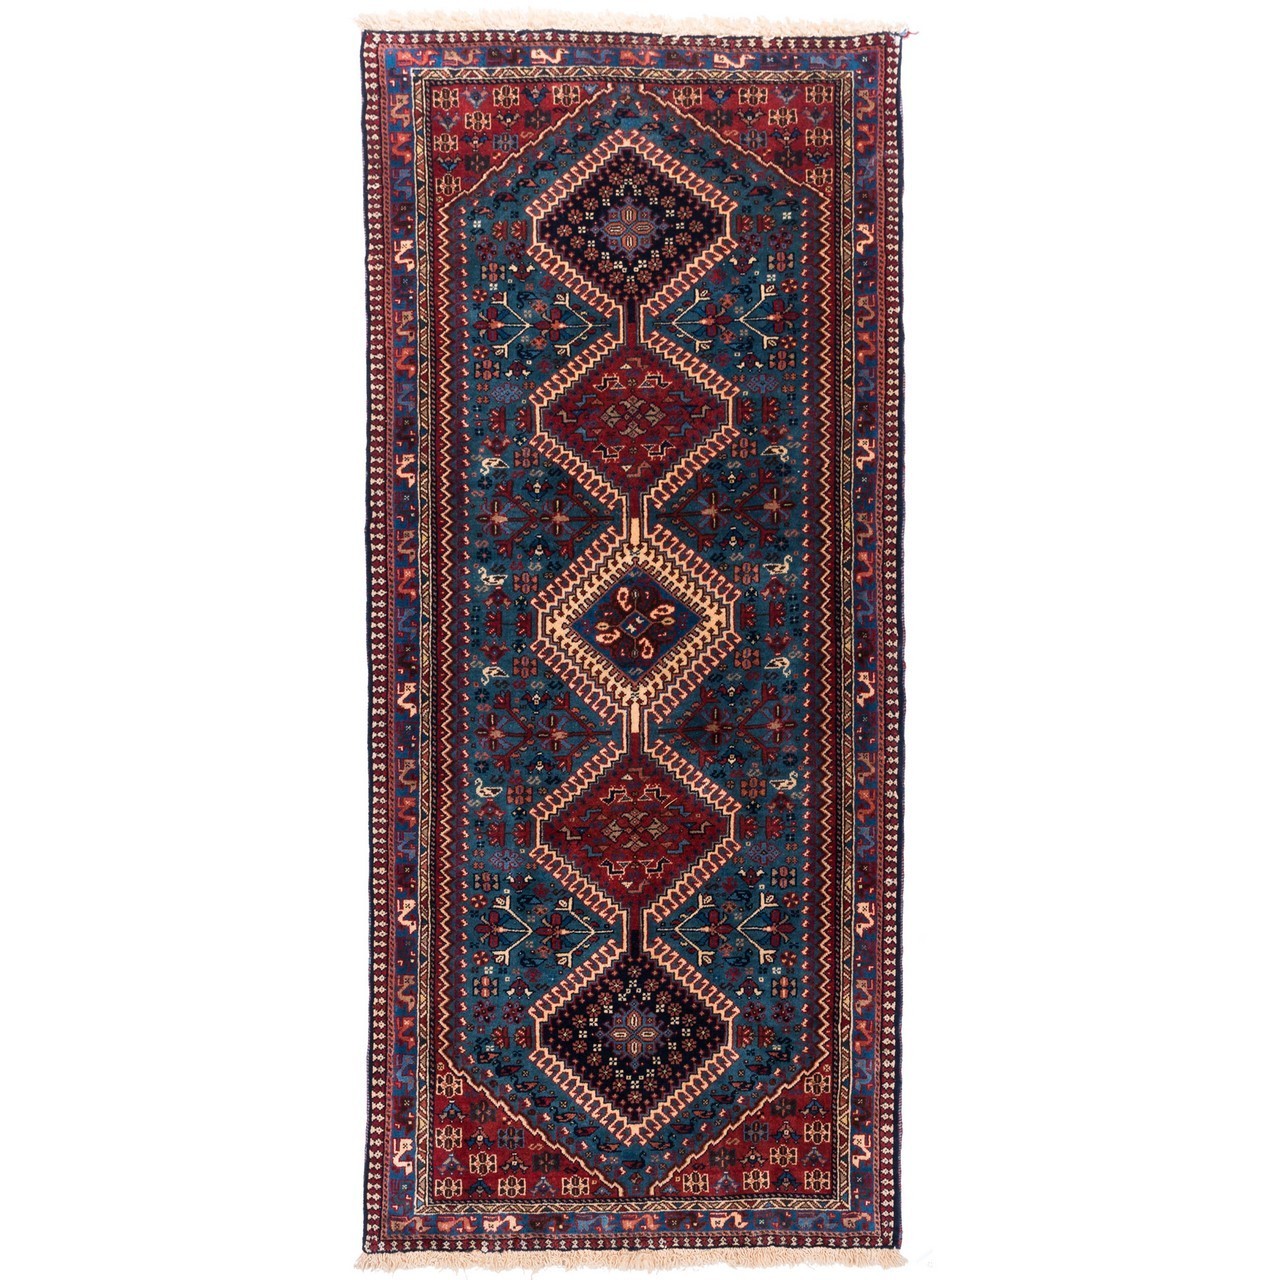 handgeknüpfter persischer Teppich. Ziffer 161053